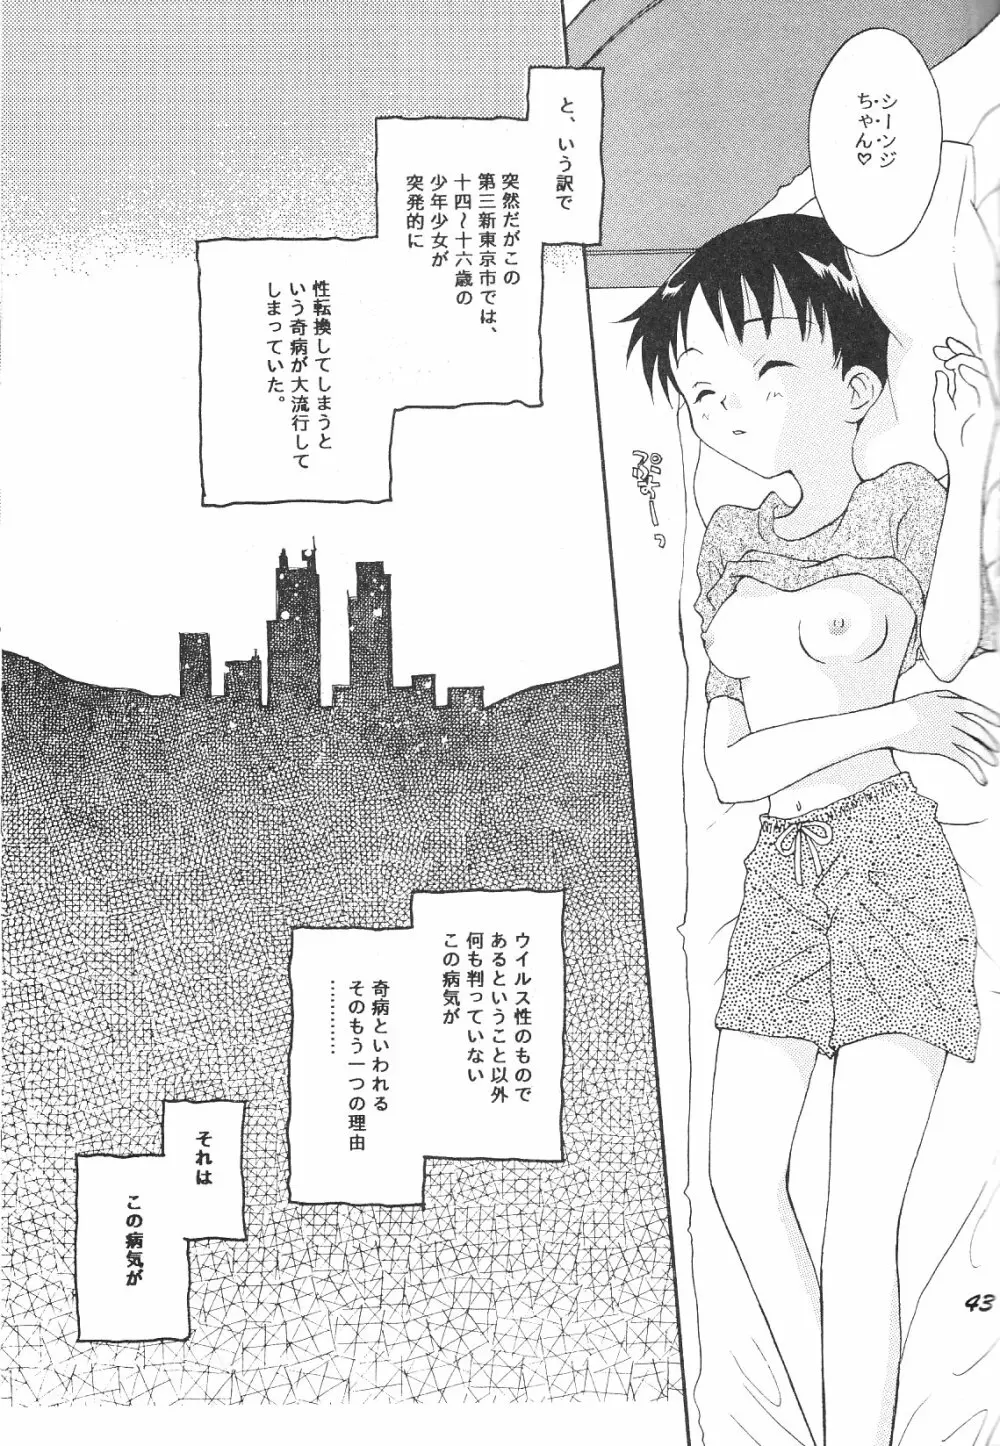 Maniac Juice 女シンジ再録集 ’96-’99 43ページ